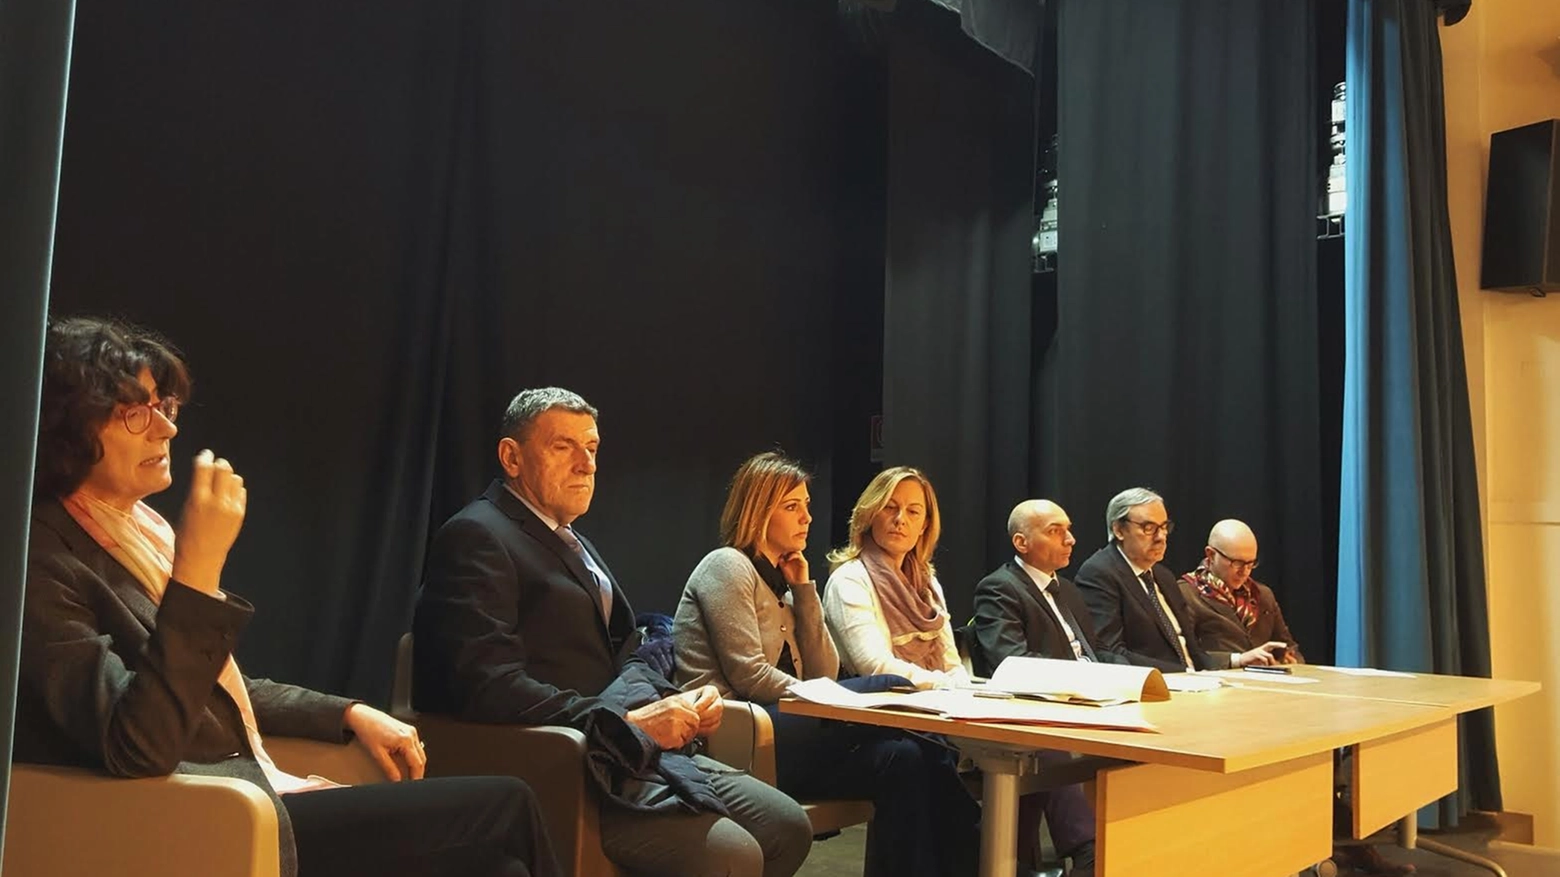 Firmato da RegioneToscana, Comuni, organizzazioni di categoria e aziende al teatro comunale di Castelfranco